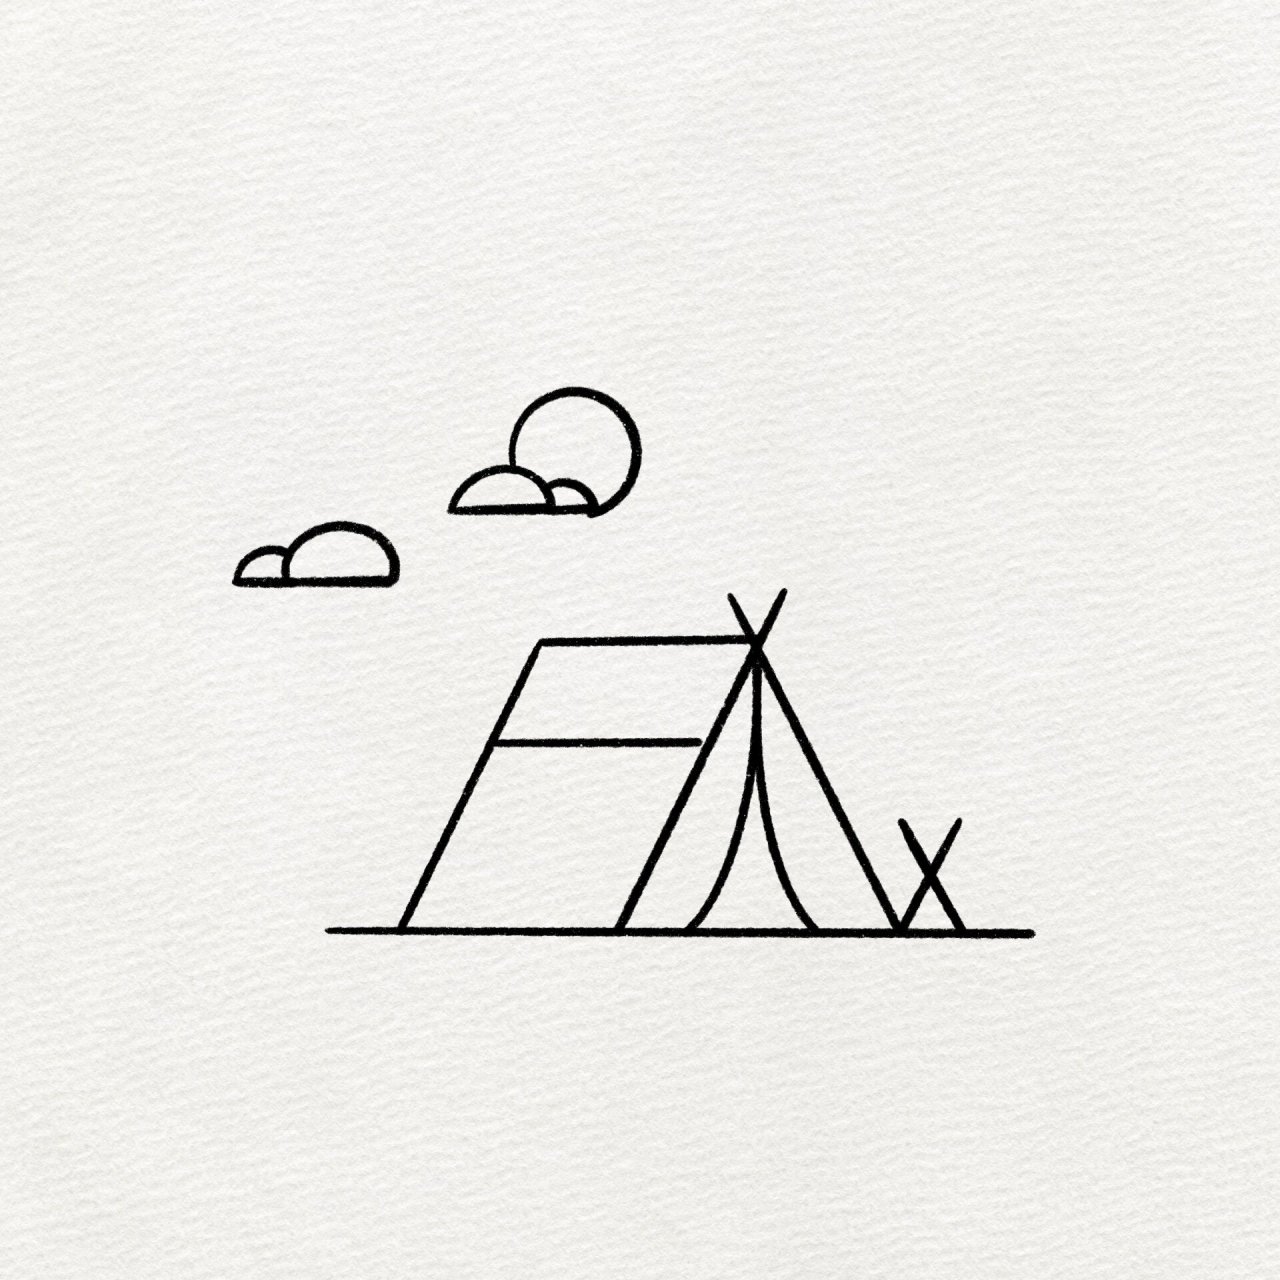 第九张简笔画露营小帐篷 太简单了吧,新手可以画的简笔画小帐篷